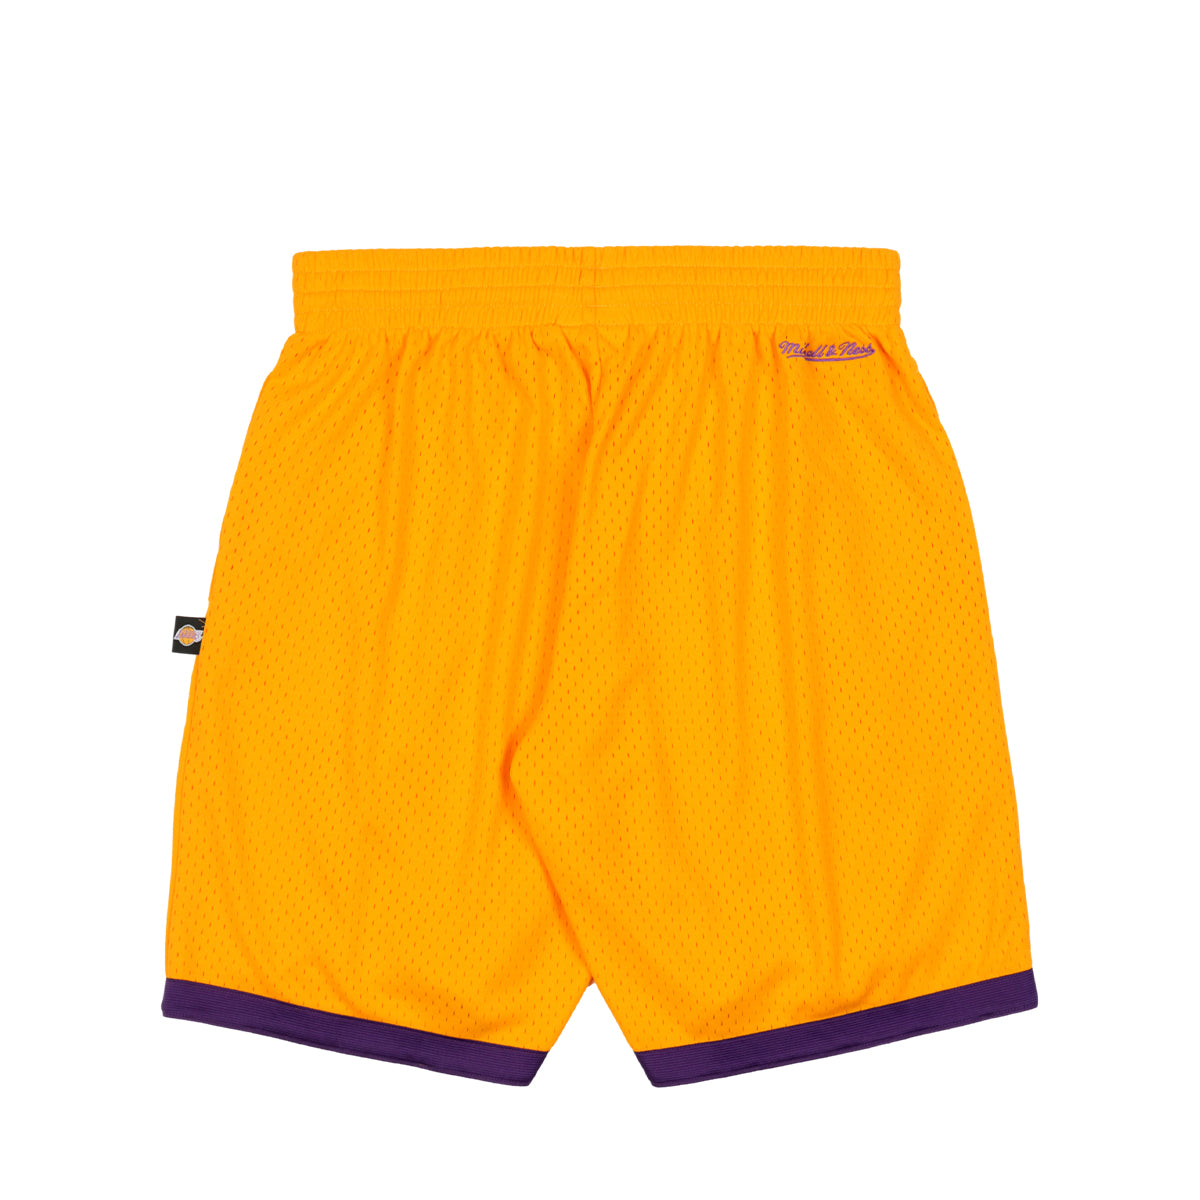 Takashi Murakami × LA Lakers × ComplexCon Basketball Shorts GOLD